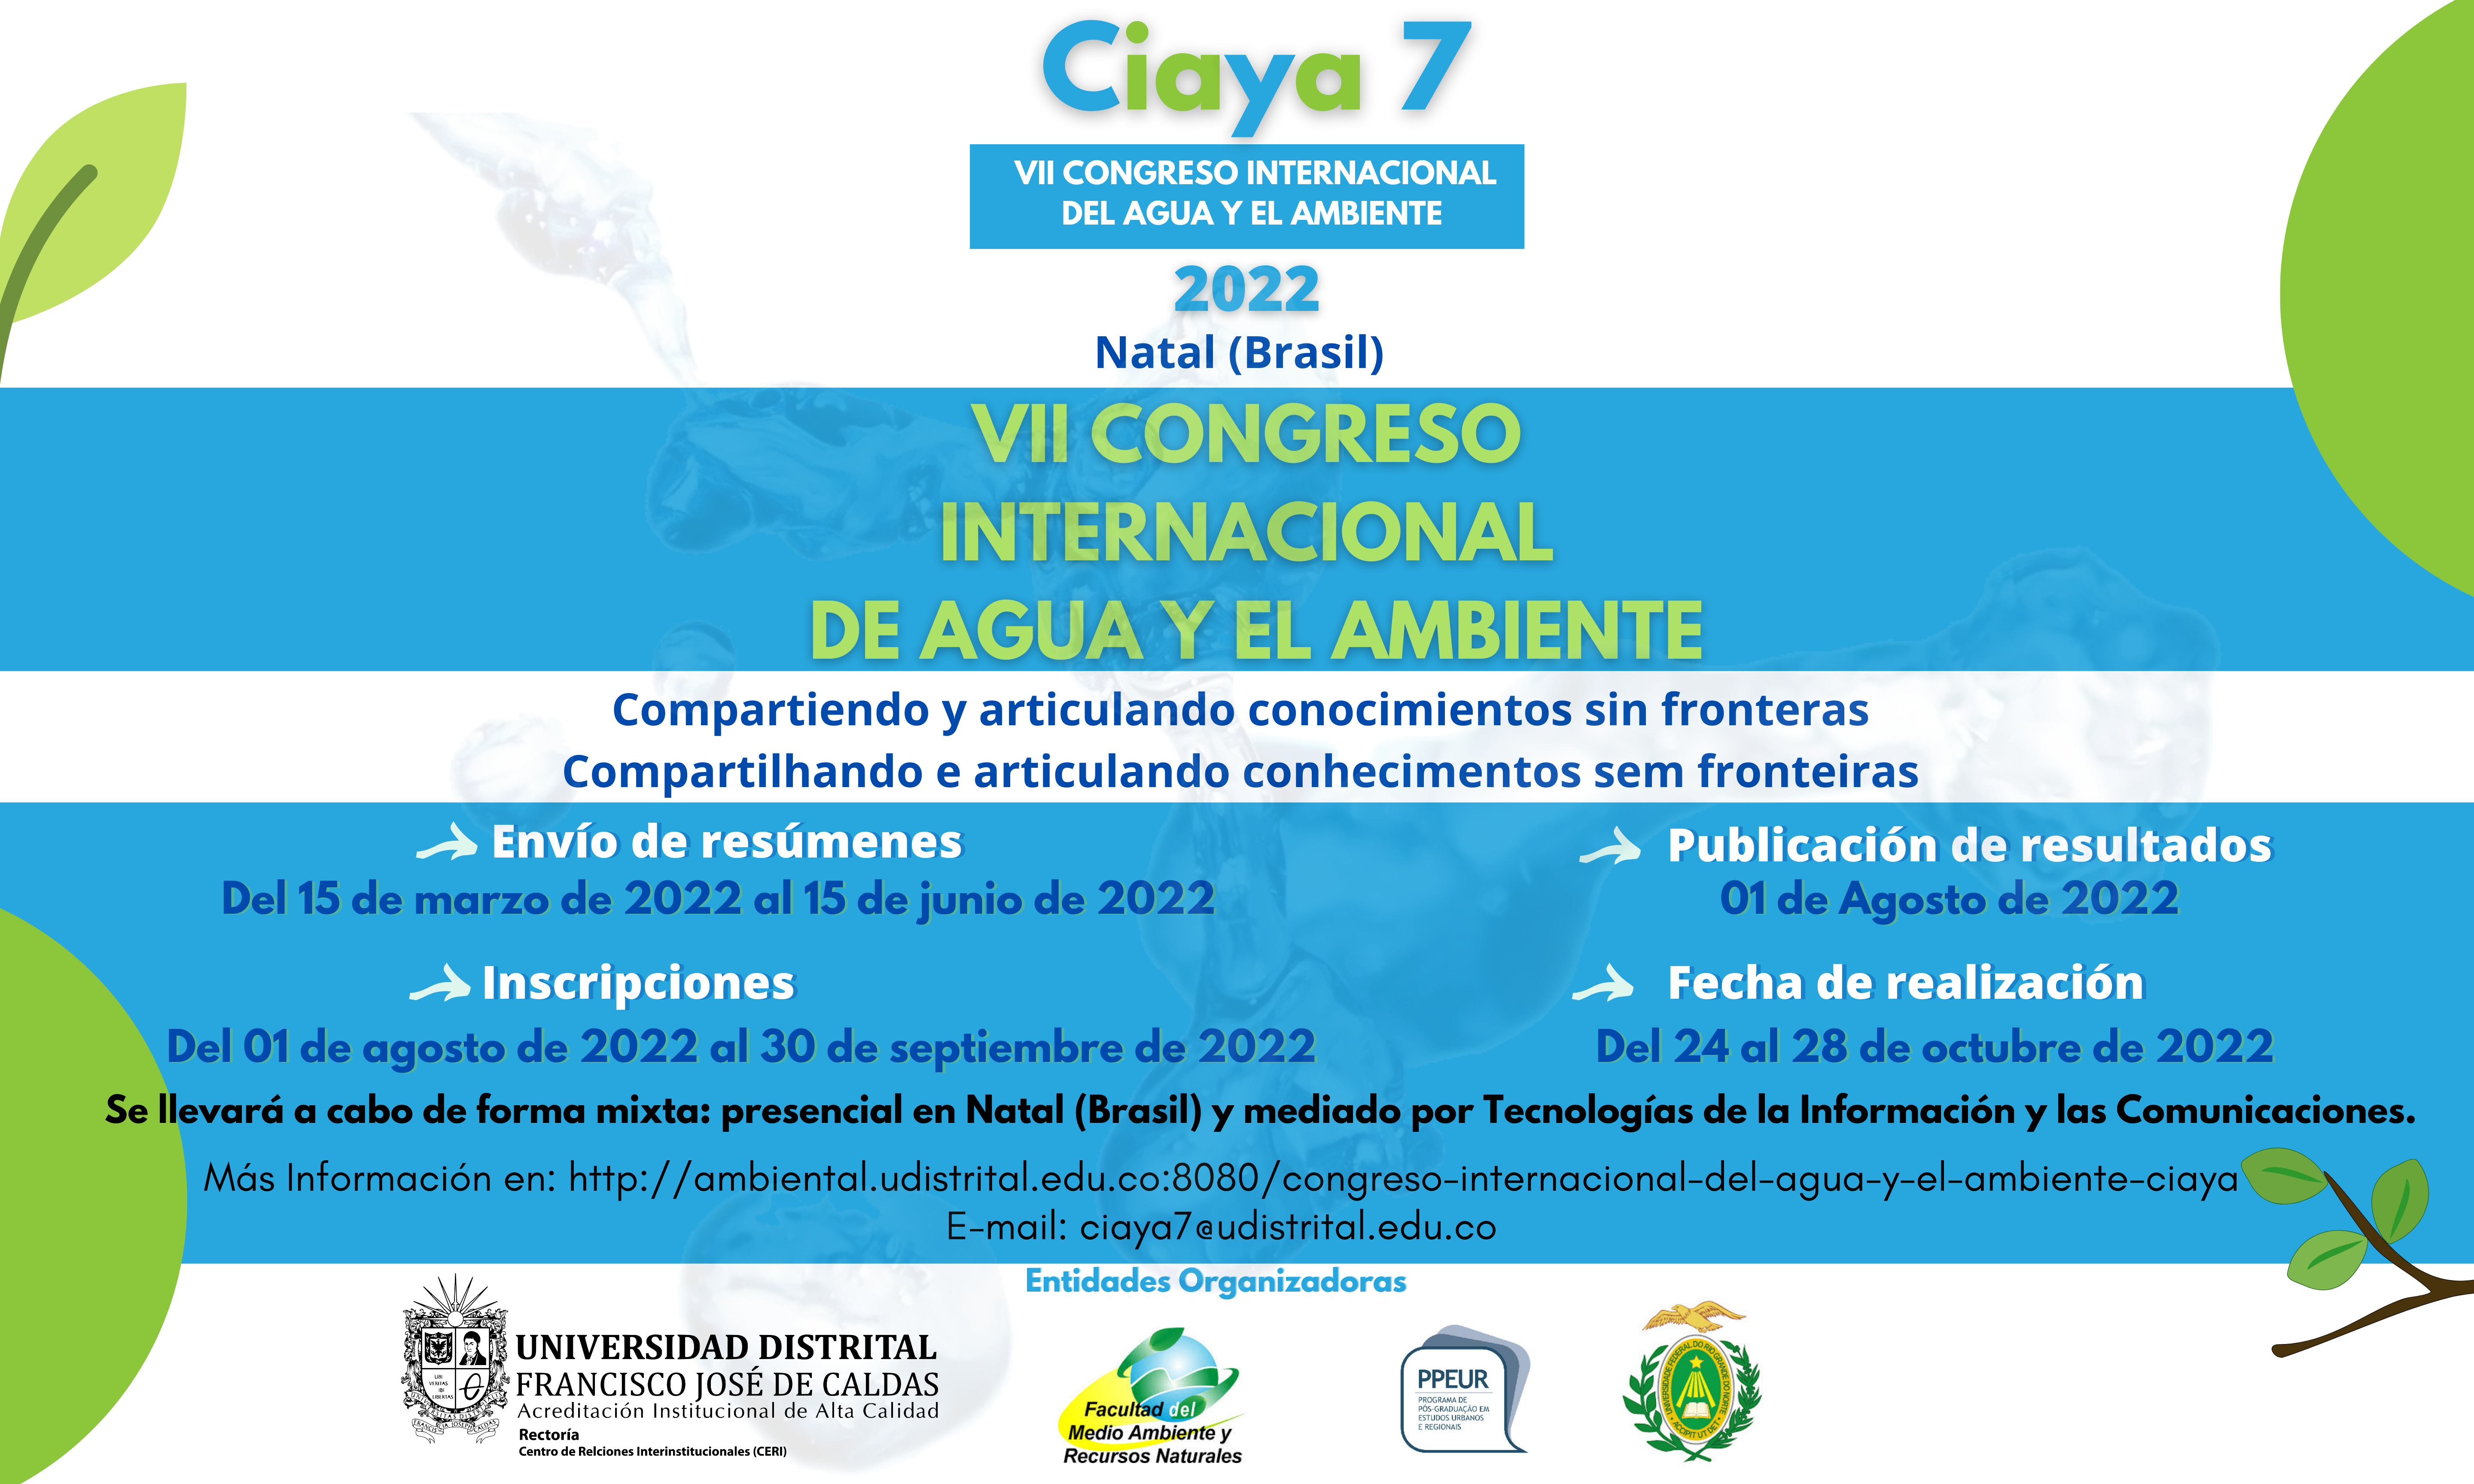  VII Congreso Internacional del agua y el ambiente (Ciaya7)